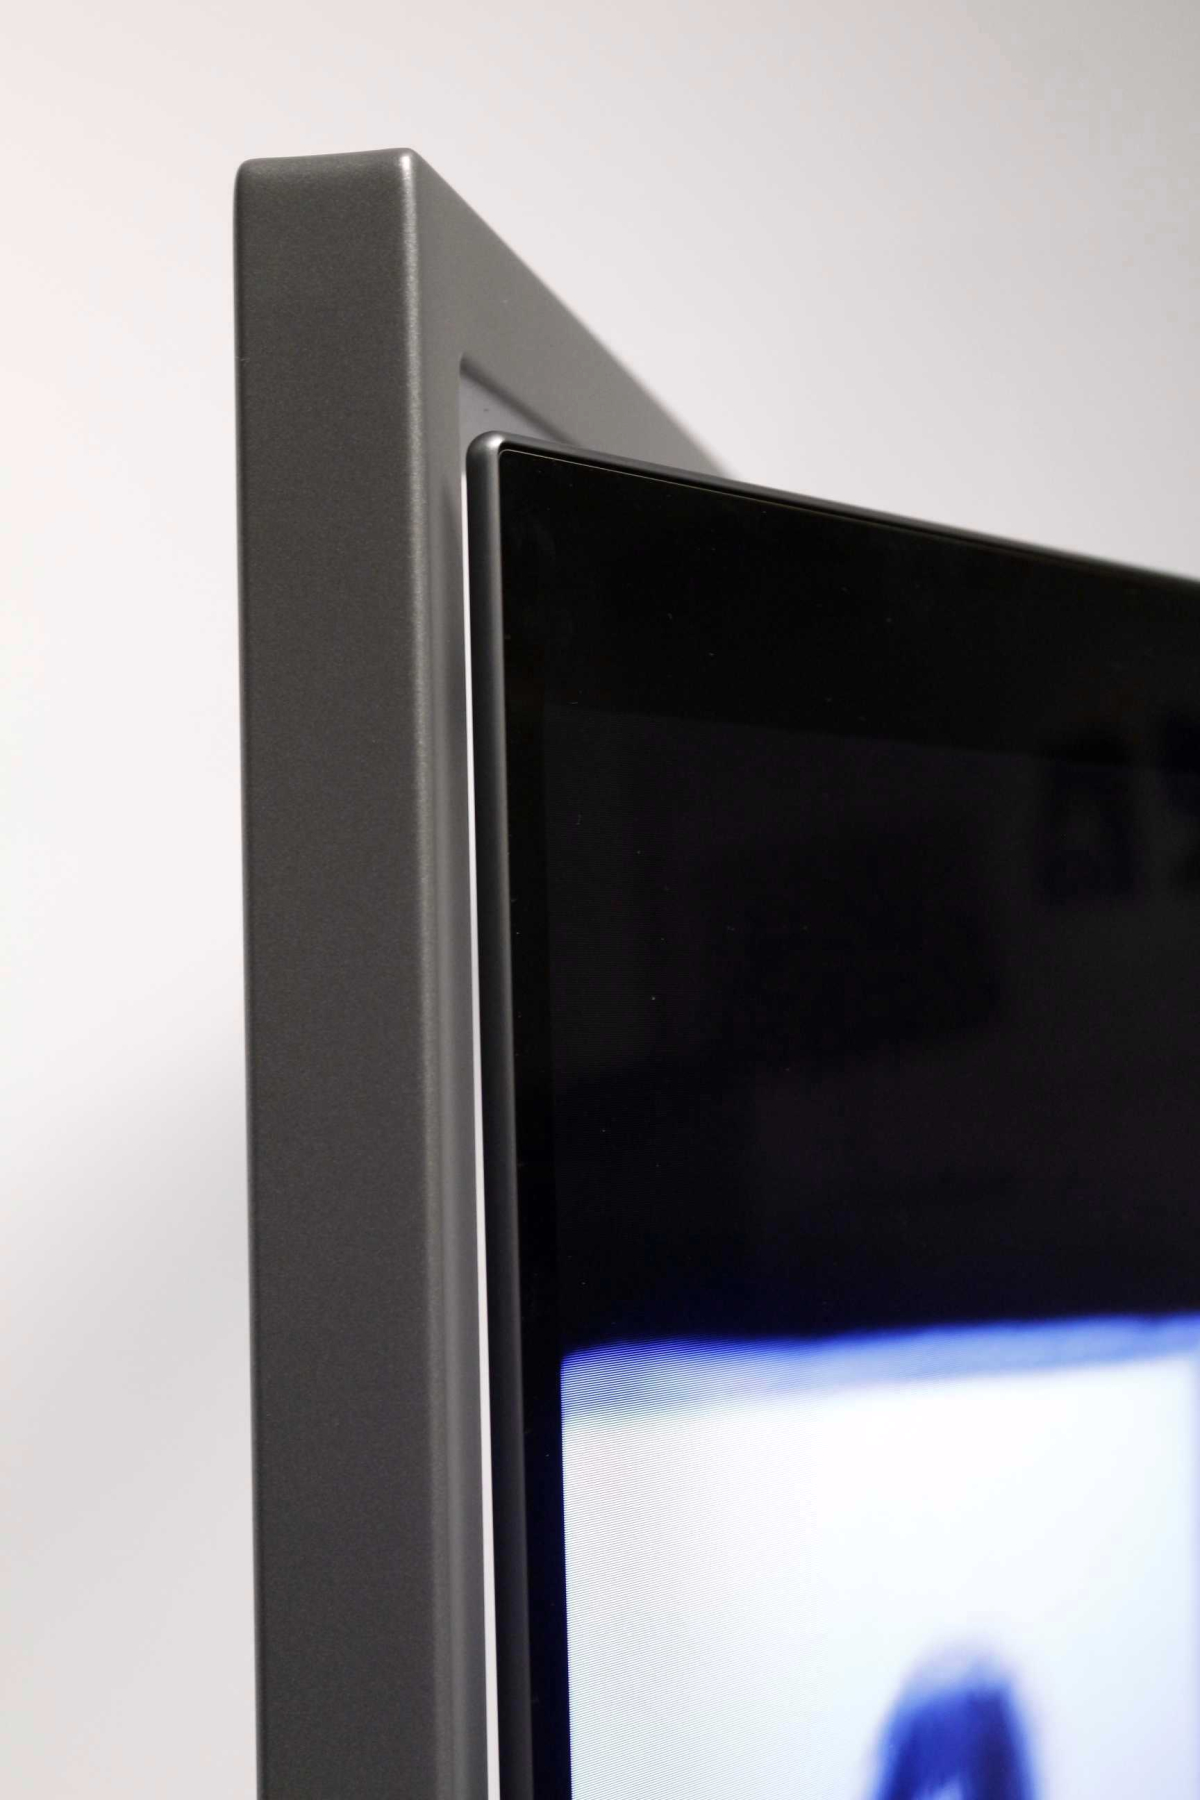 Loewe Bild 9.55, probamos el nuevo televisor OLED más alto de gama 5